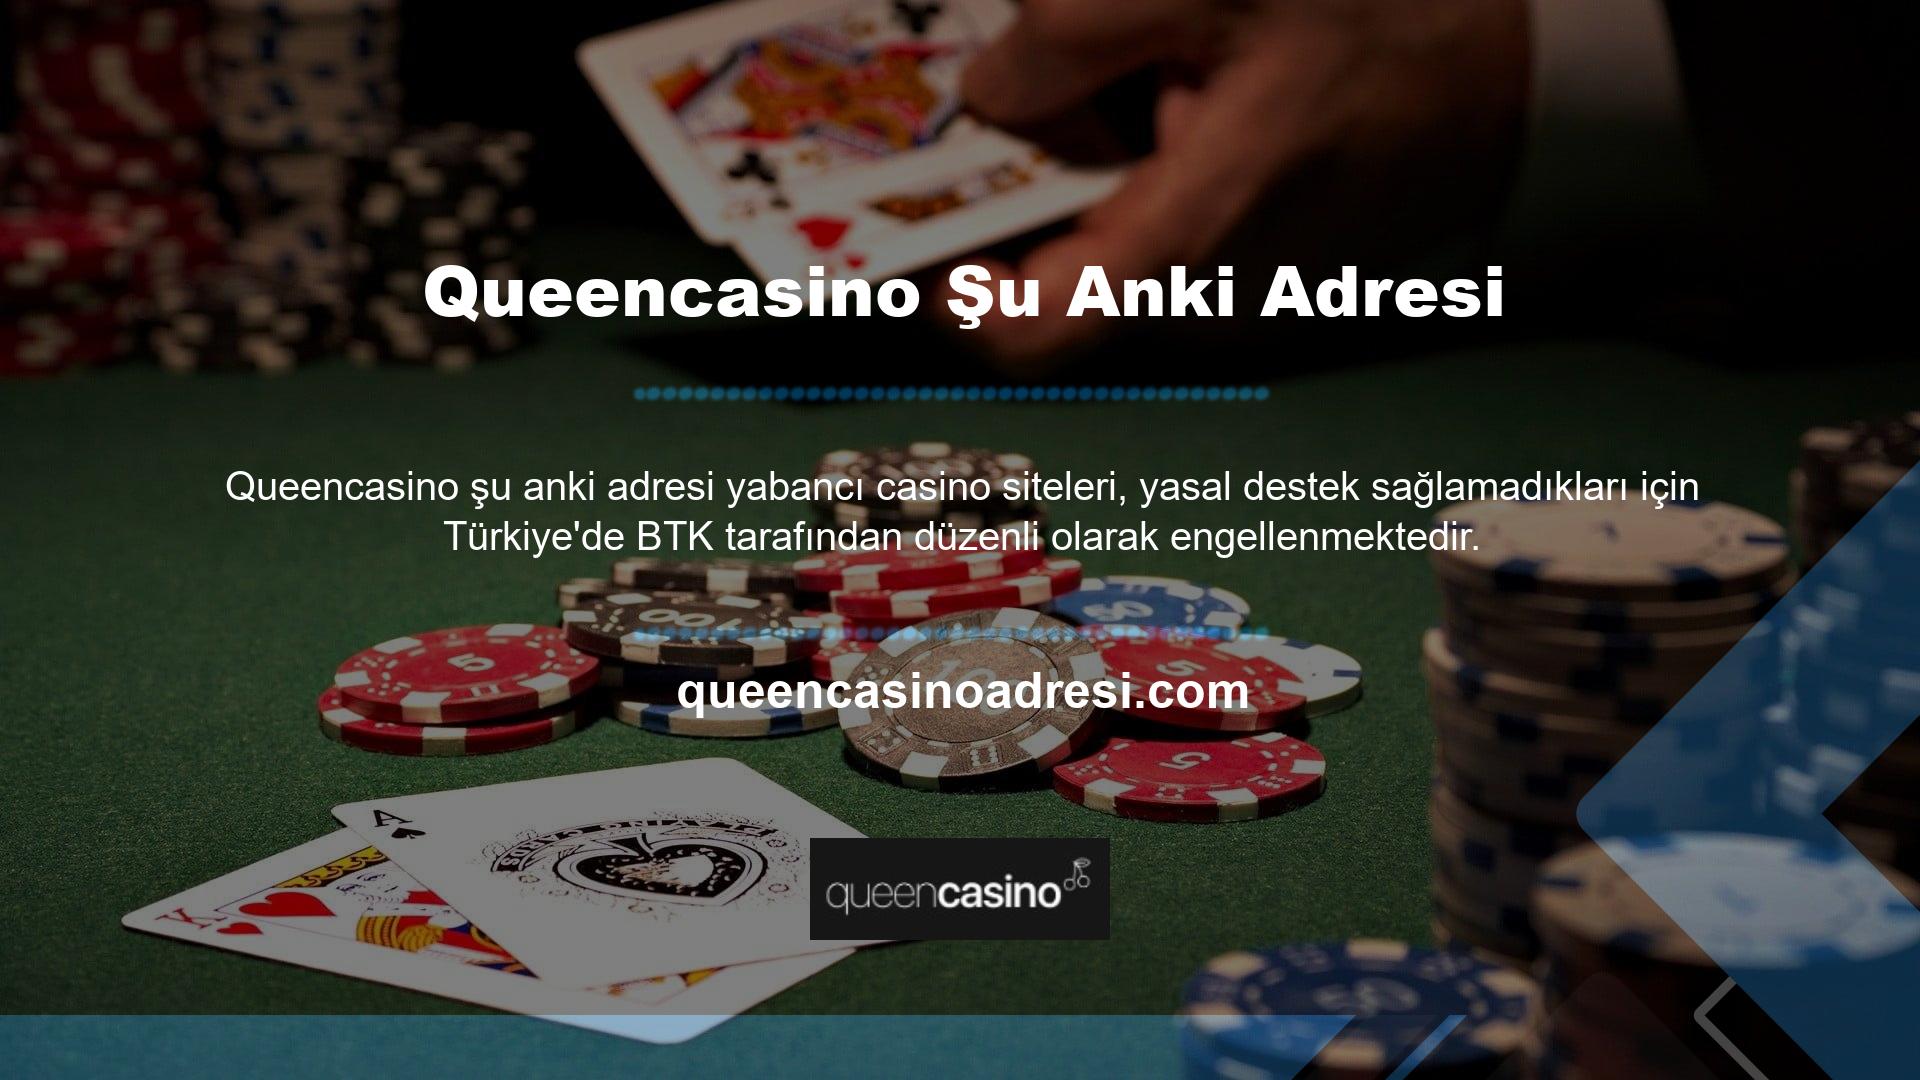 Bununla birlikte, dijital alanın değiştirilmesi, yasa dışı web sitelerinin Türk casino pazarına yeniden girmesine izin verdi